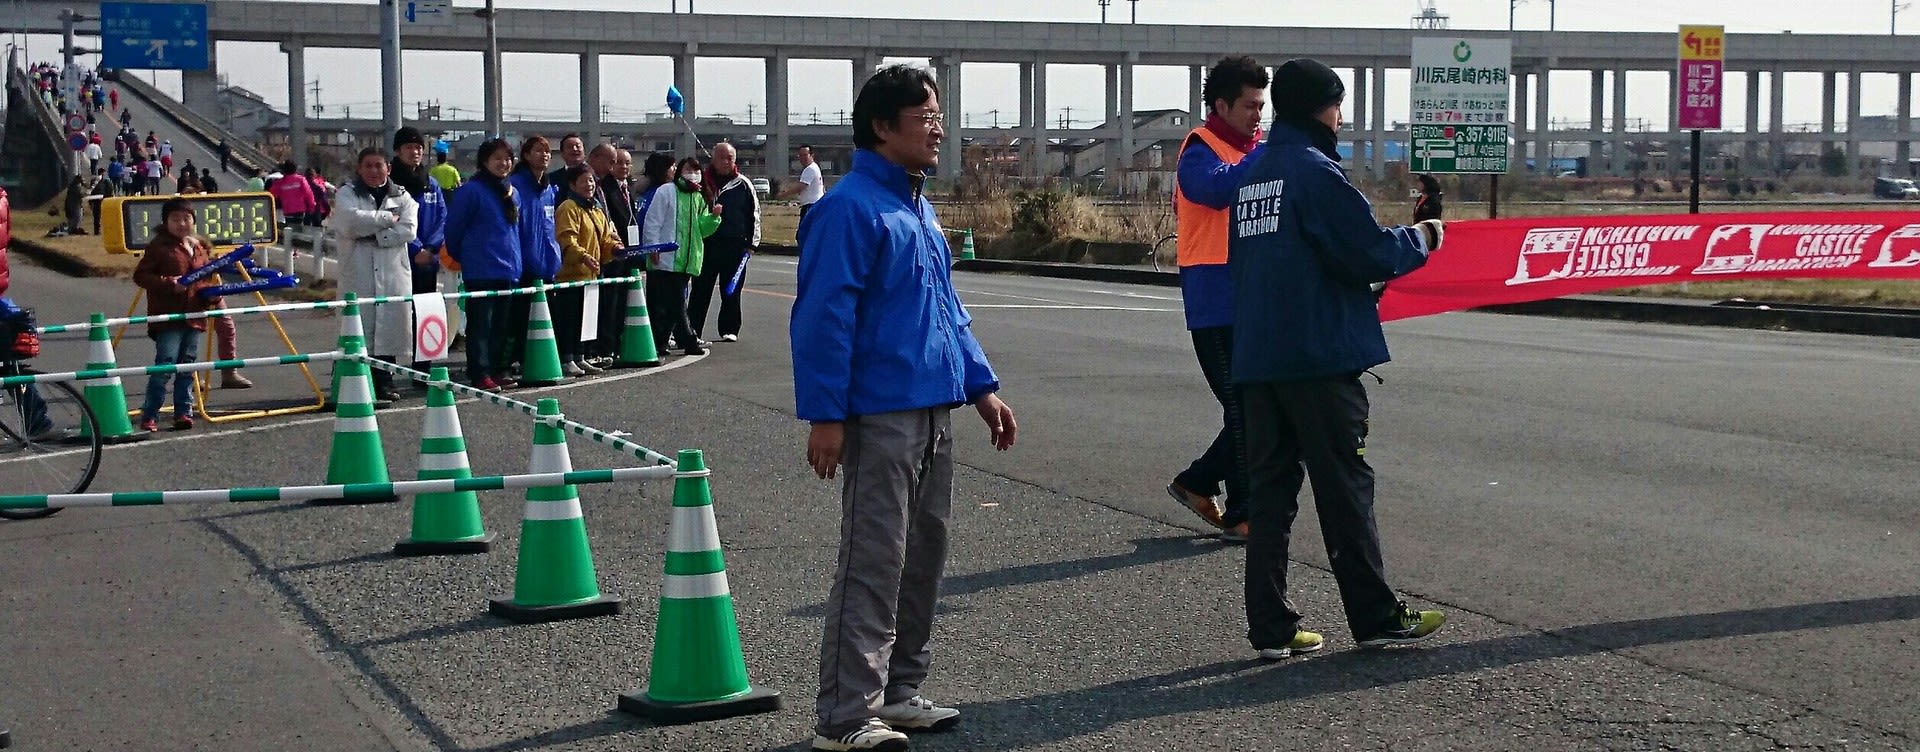 熊本城マラソン 第二関門閉鎖 岡岳アスリートクラブ